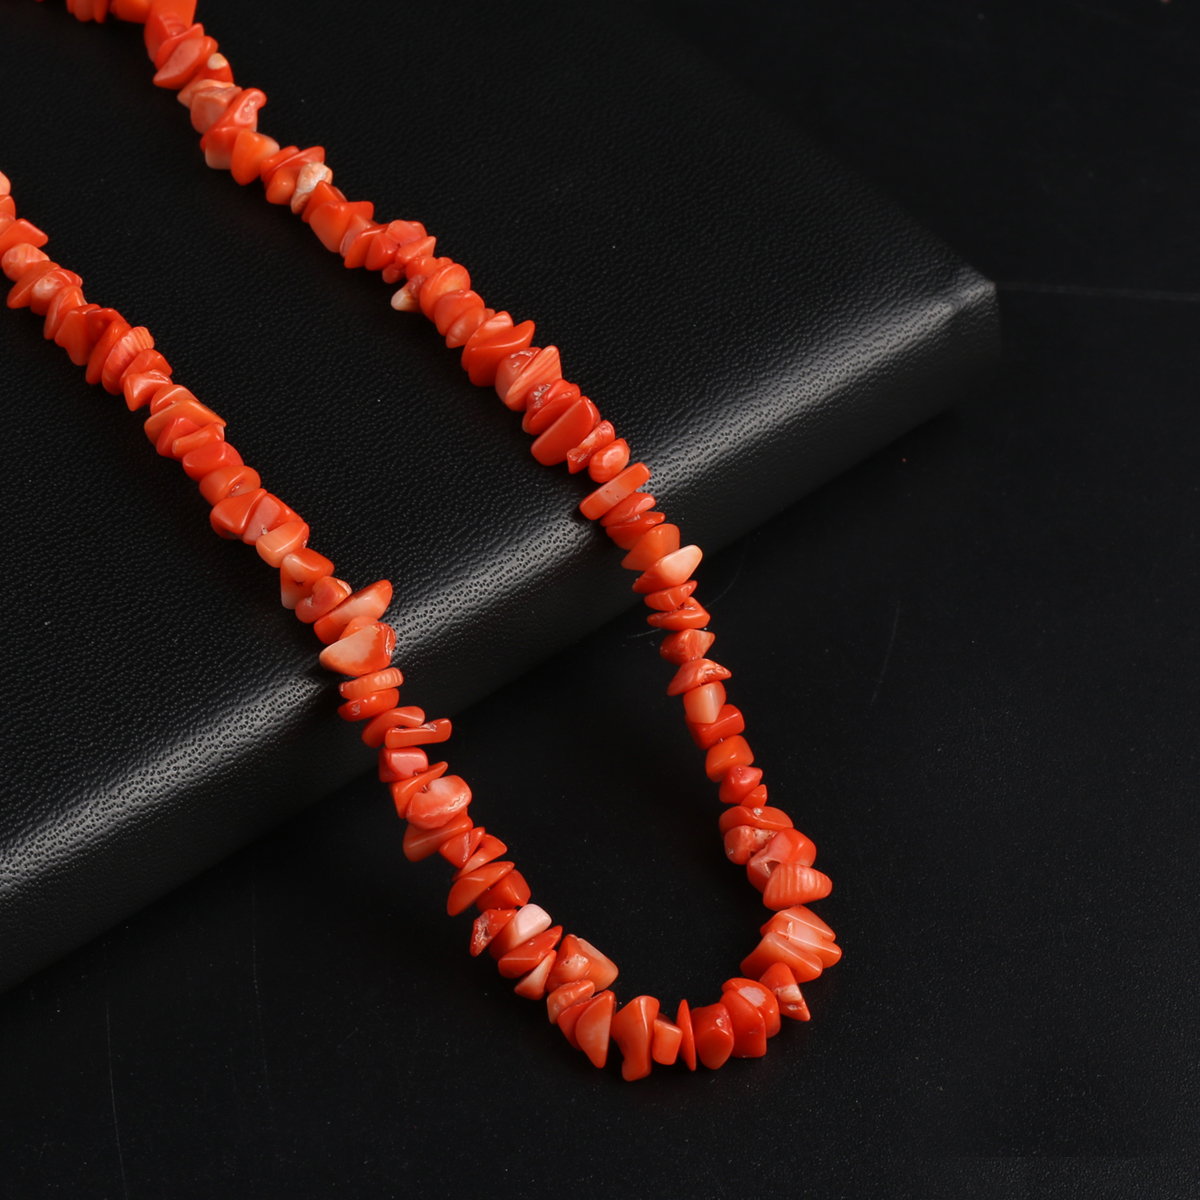 Kunstmatige koraal kralen Zee bamboe synthetische onregelmatige koraalkralen voor sieraden maken doe -het -zelf ketting armband oorbellen accessoire